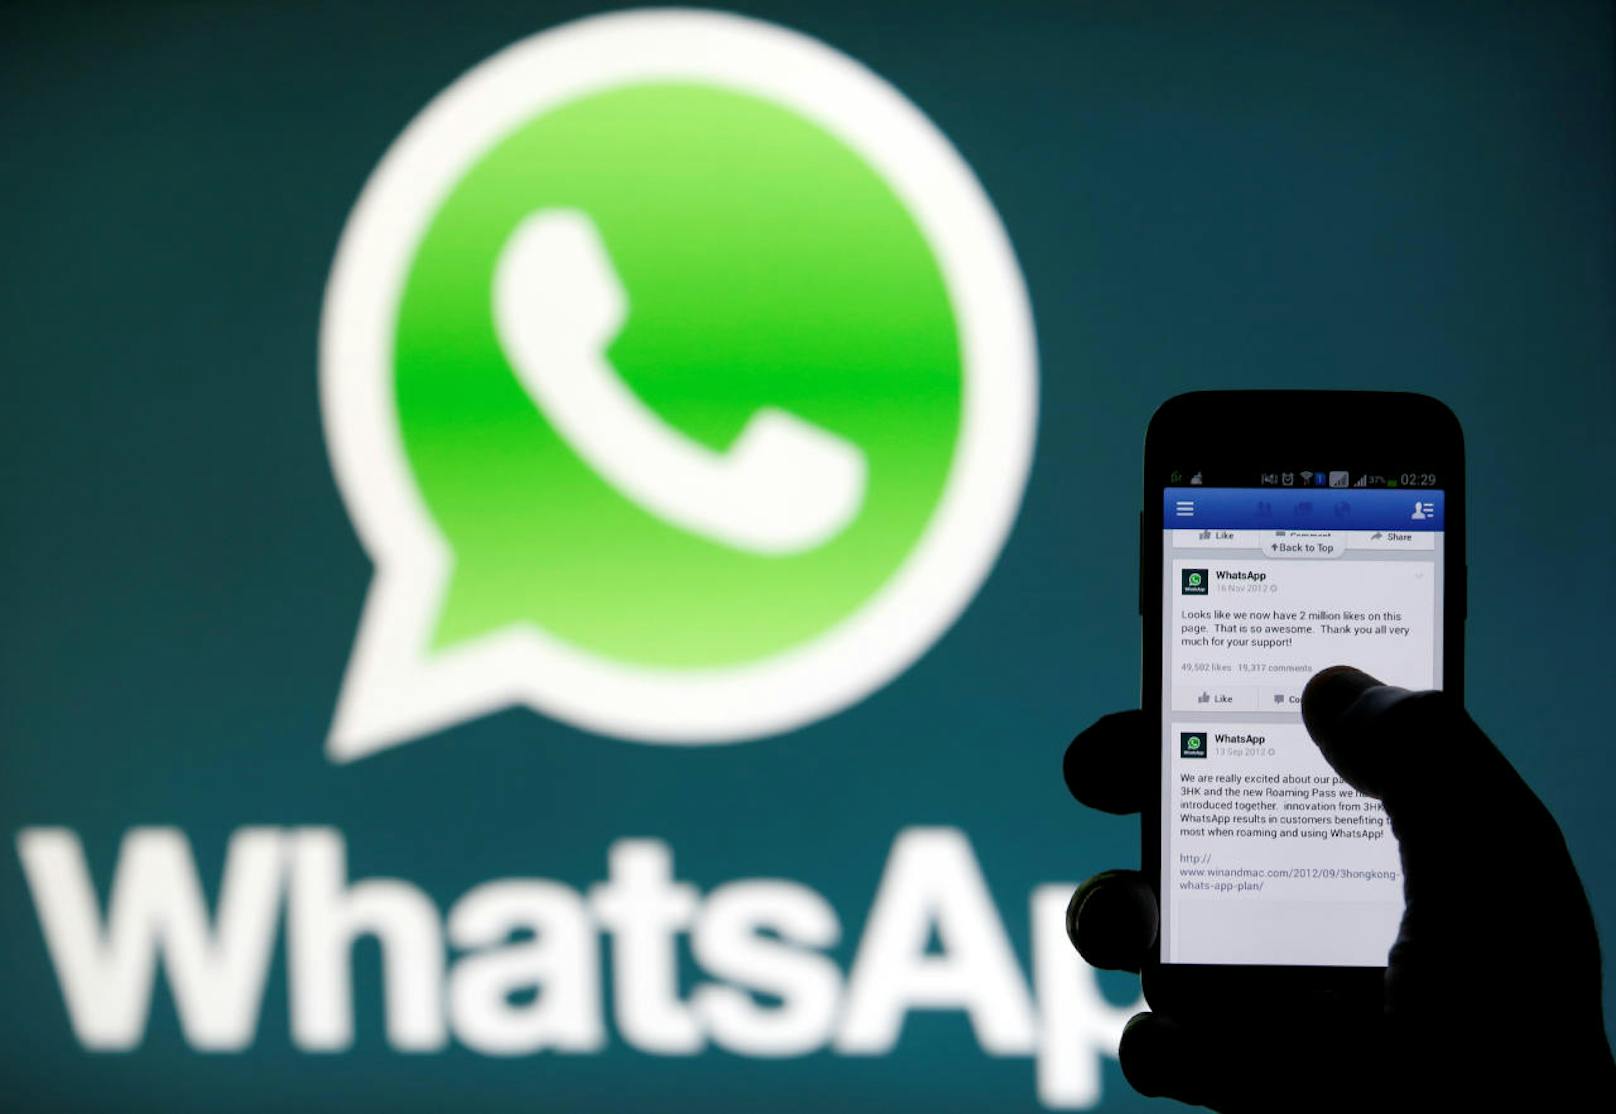 Der Facebook-Konzern, der WhatsApp für viel Geld übernommen hat, möchte mit dem Messenger künftig Geld verdienen.